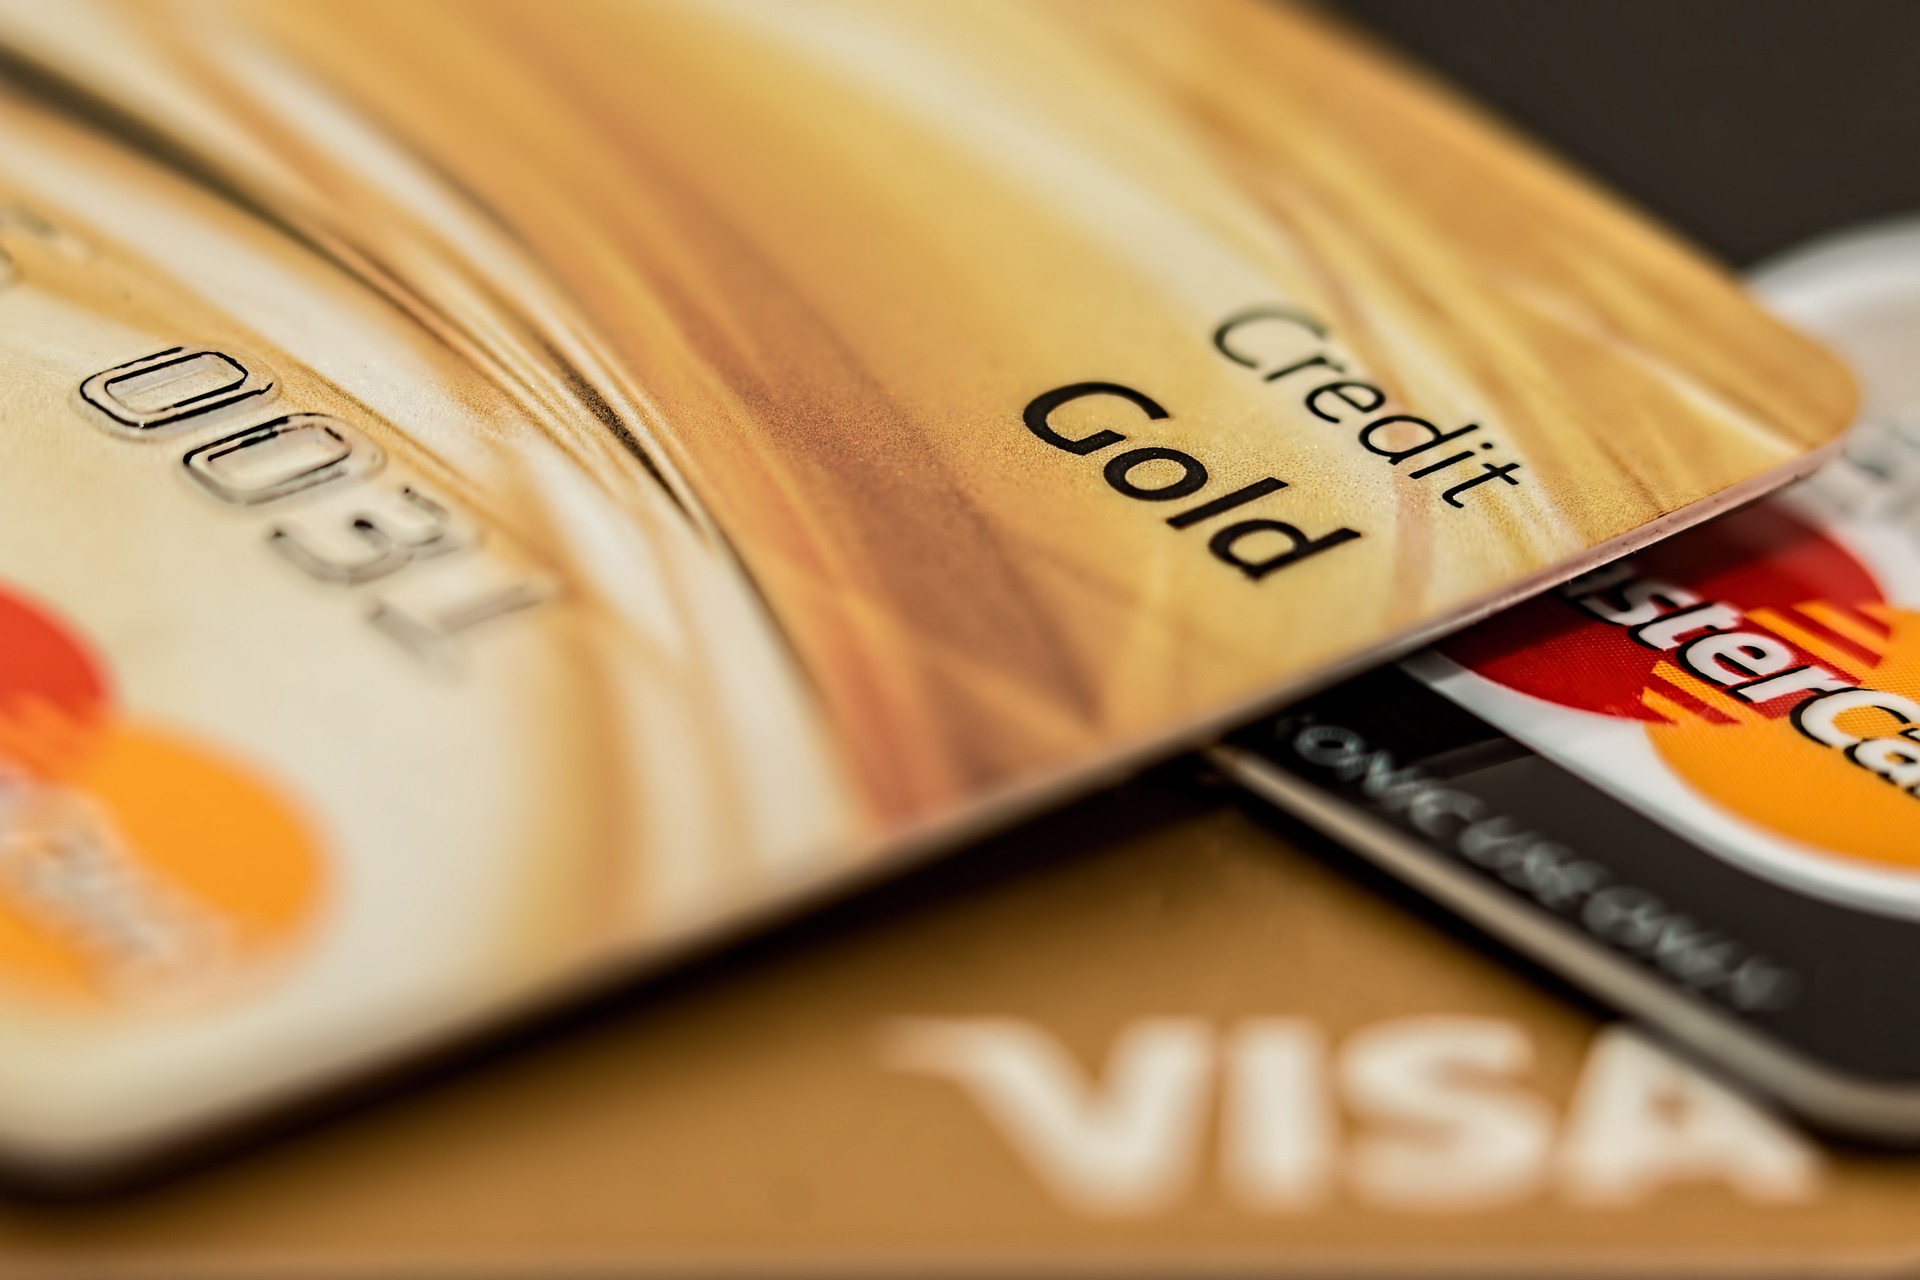 Karta kredytowa czy debetowa? Porównanie mechanizmów, różnice i wskazówki dotyczące wyboru